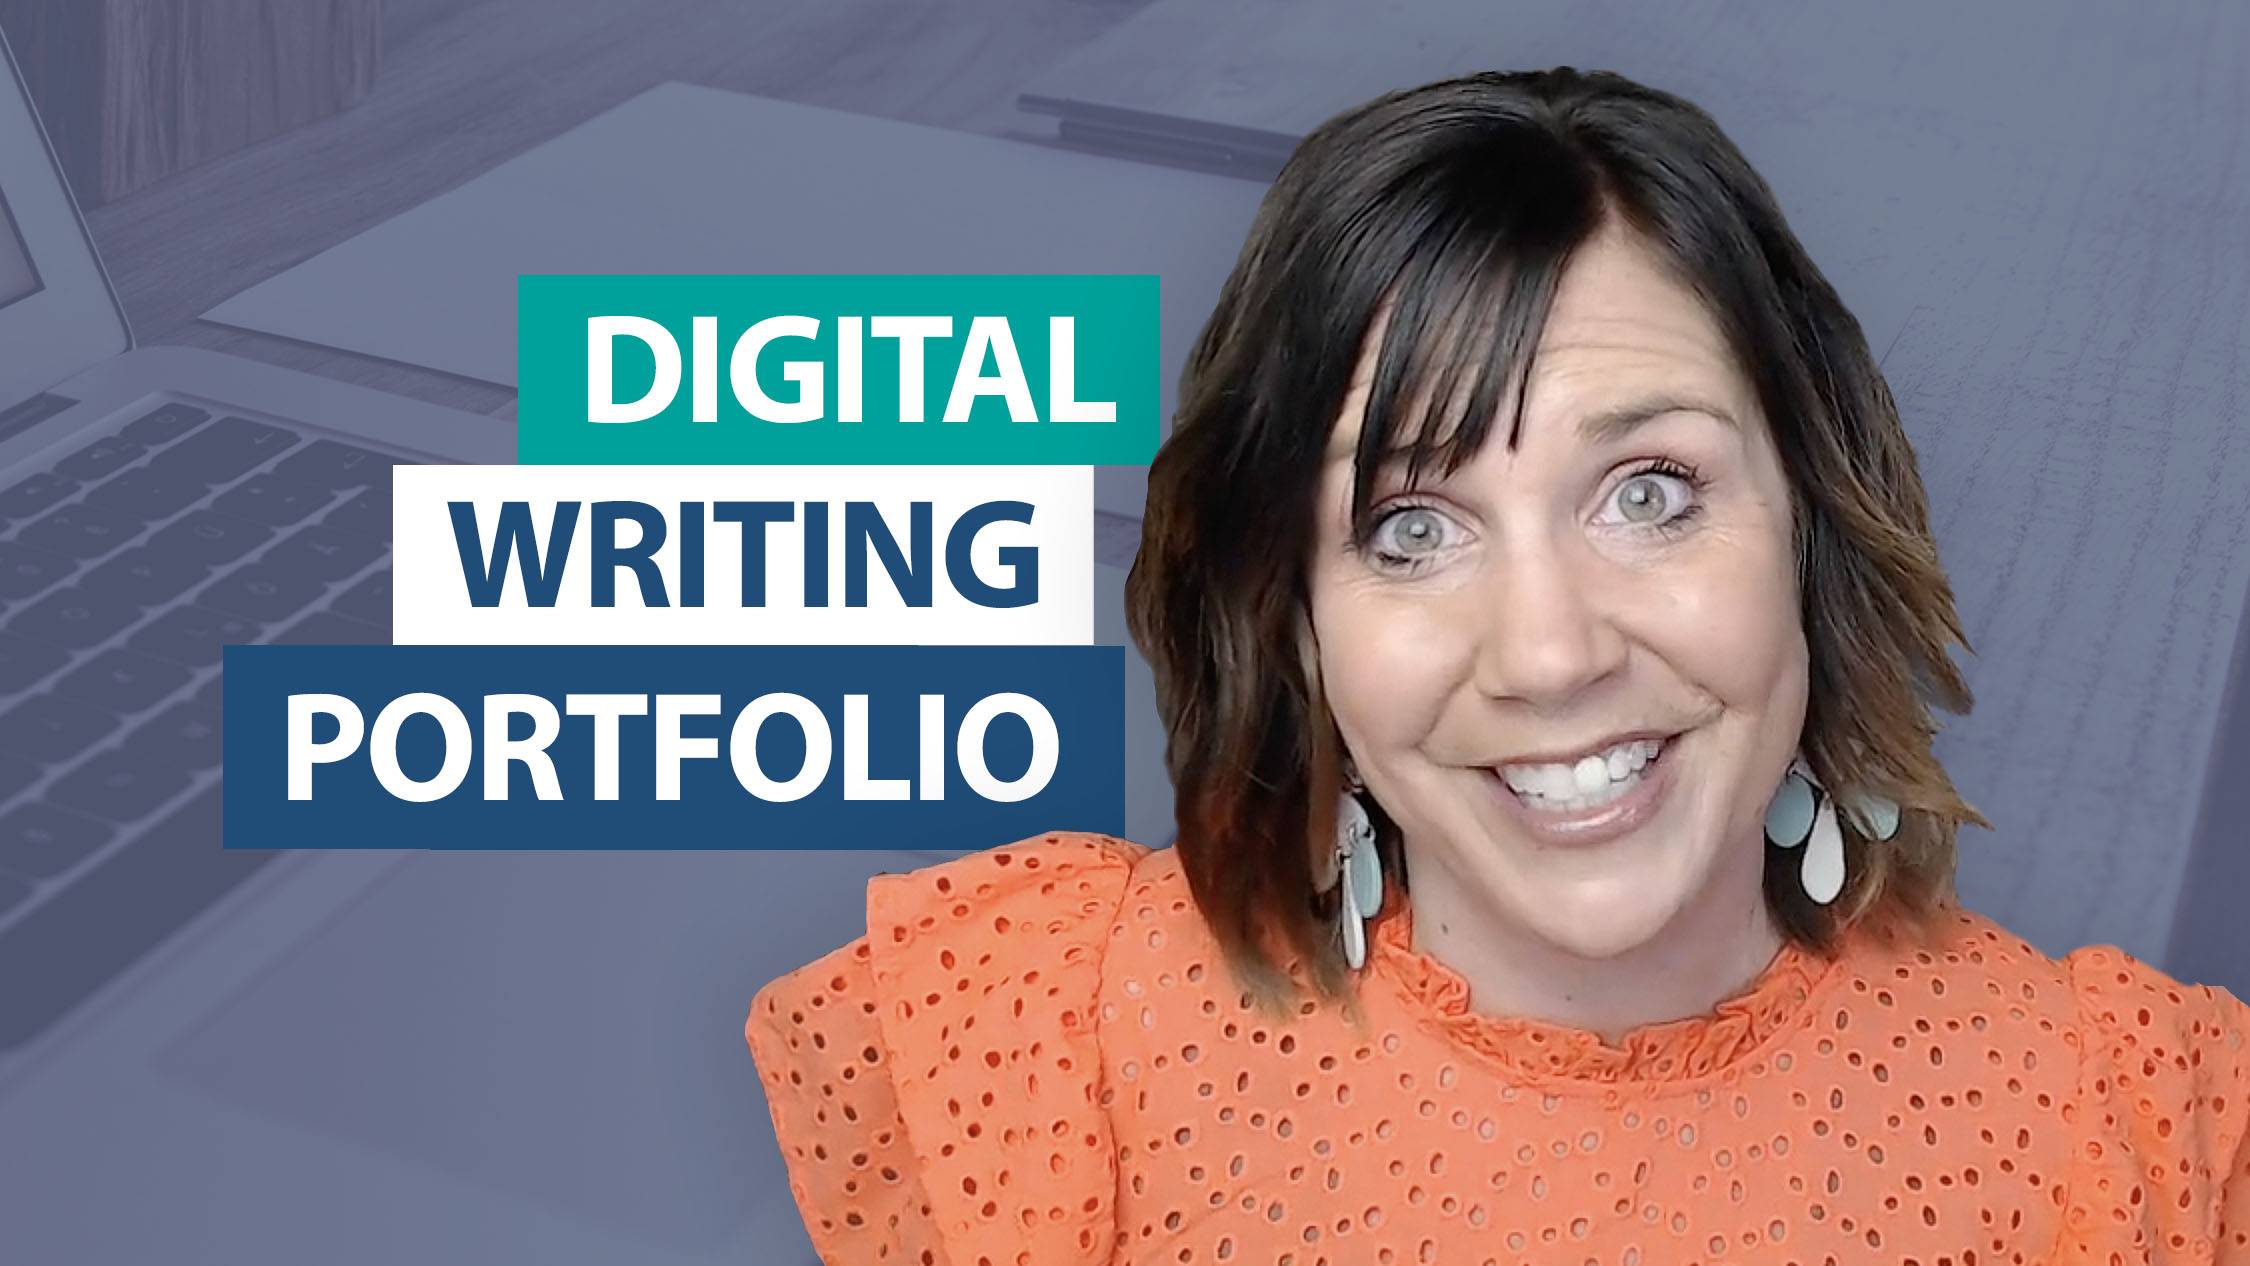 How can I create a digital writing portfolio?